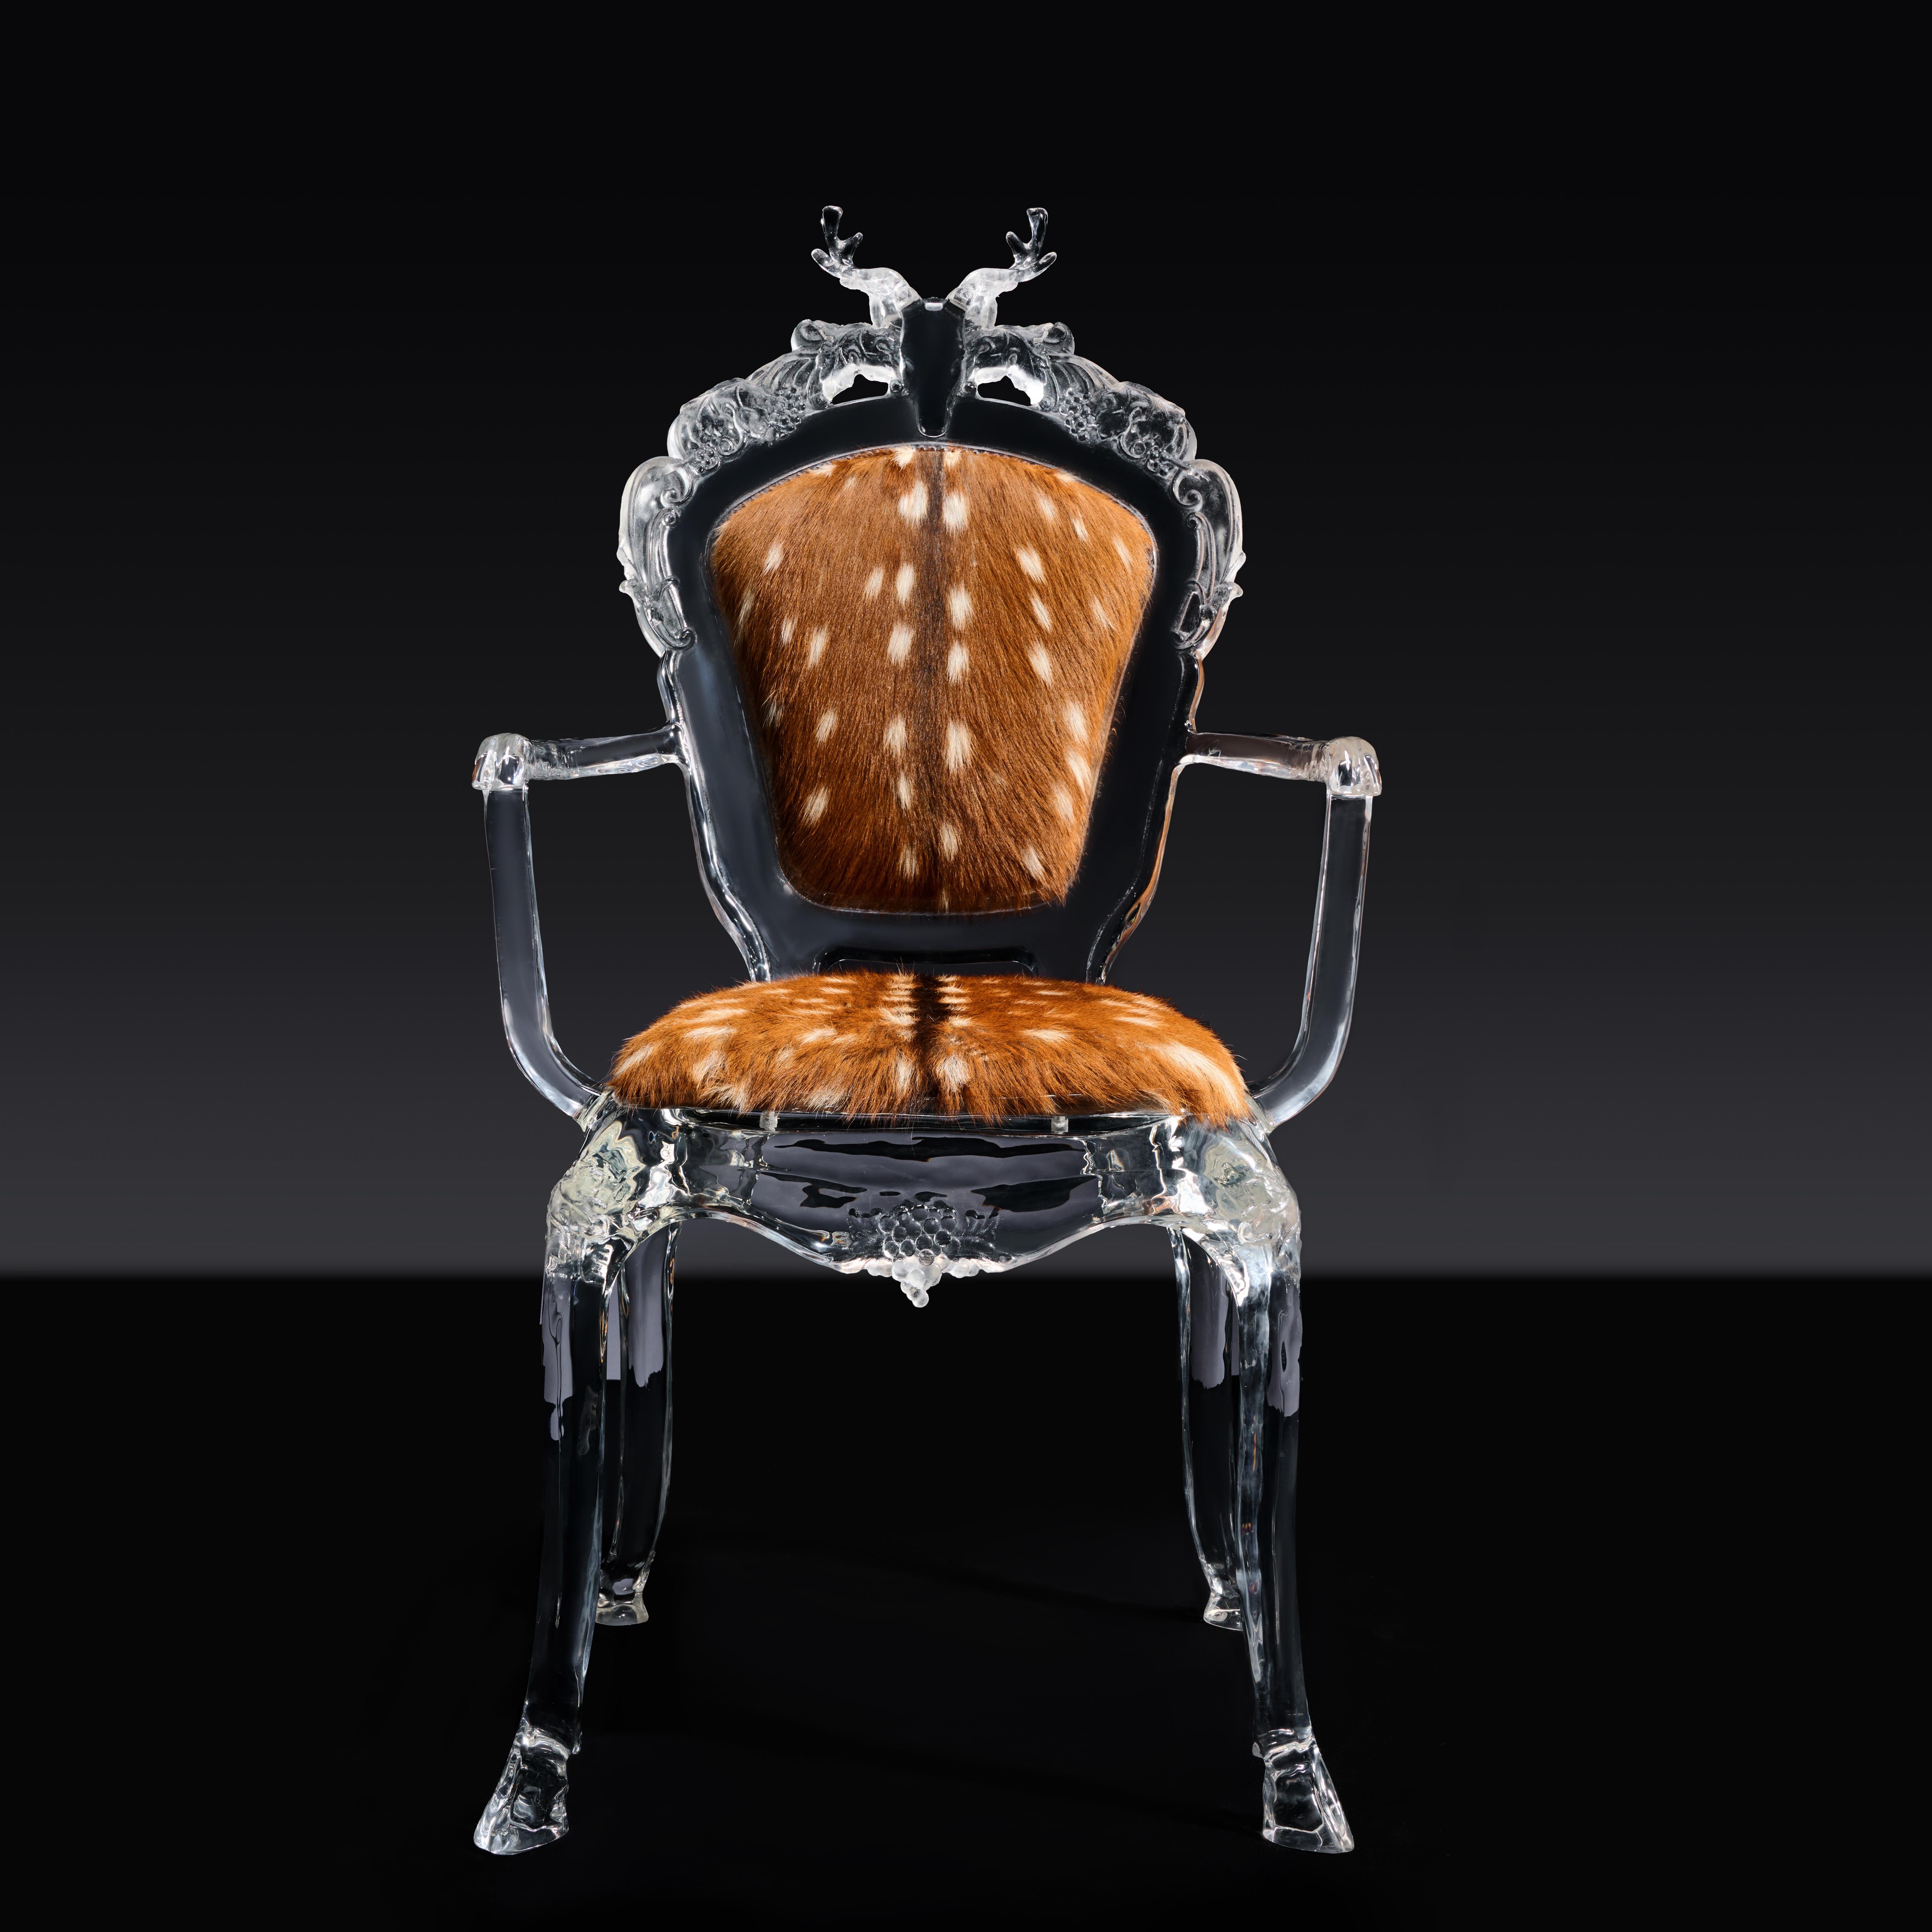 La chaise est inspirée d'une chaise antique de style rococo. Ce style de mobilier, qui s'est épanoui dans les années 30 du XVIIIe siècle et qui mettait l'accent sur les belles décorations artistiques et les formes courbes et douces, est l'un des